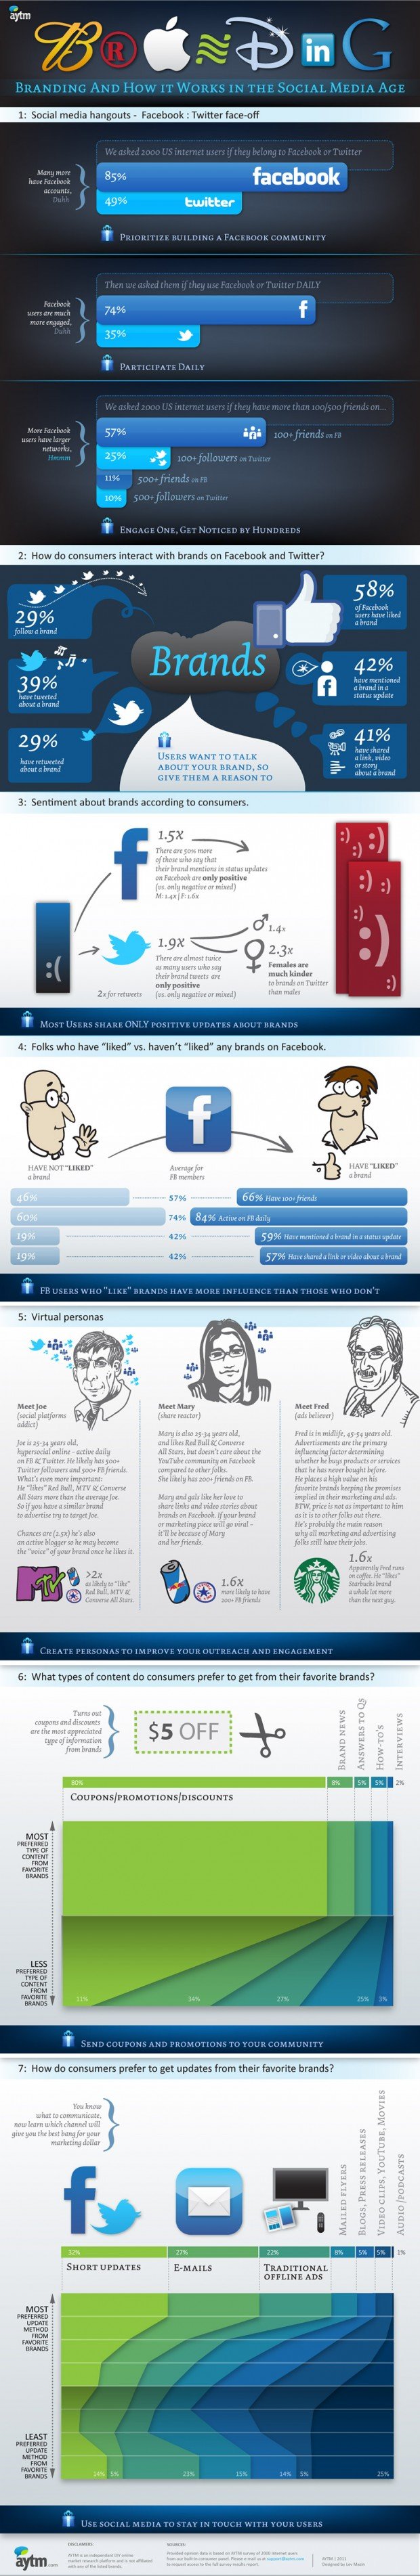 Branding On Social Media [Infographic]